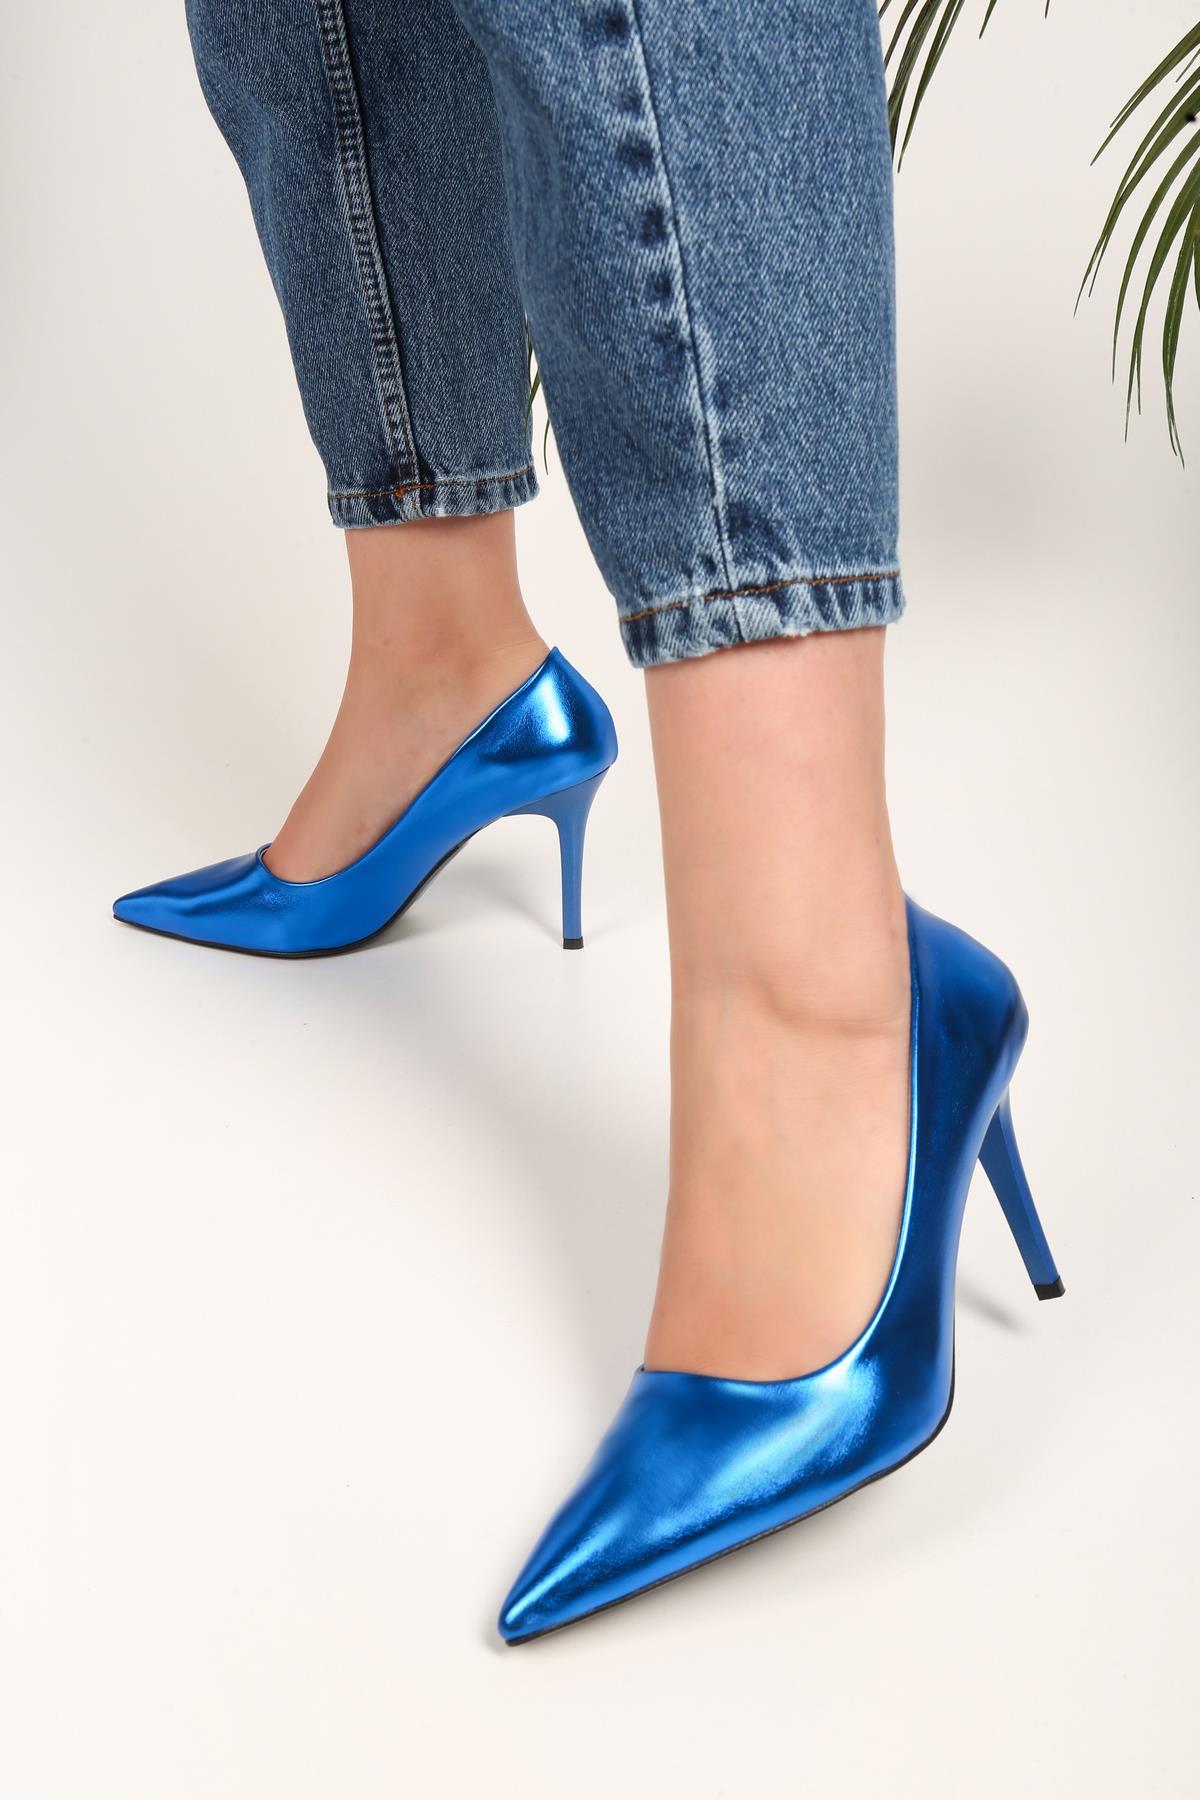 Kadın Lyvia Saks Mavi Metalik Topuklu Ayakkabı Stiletto